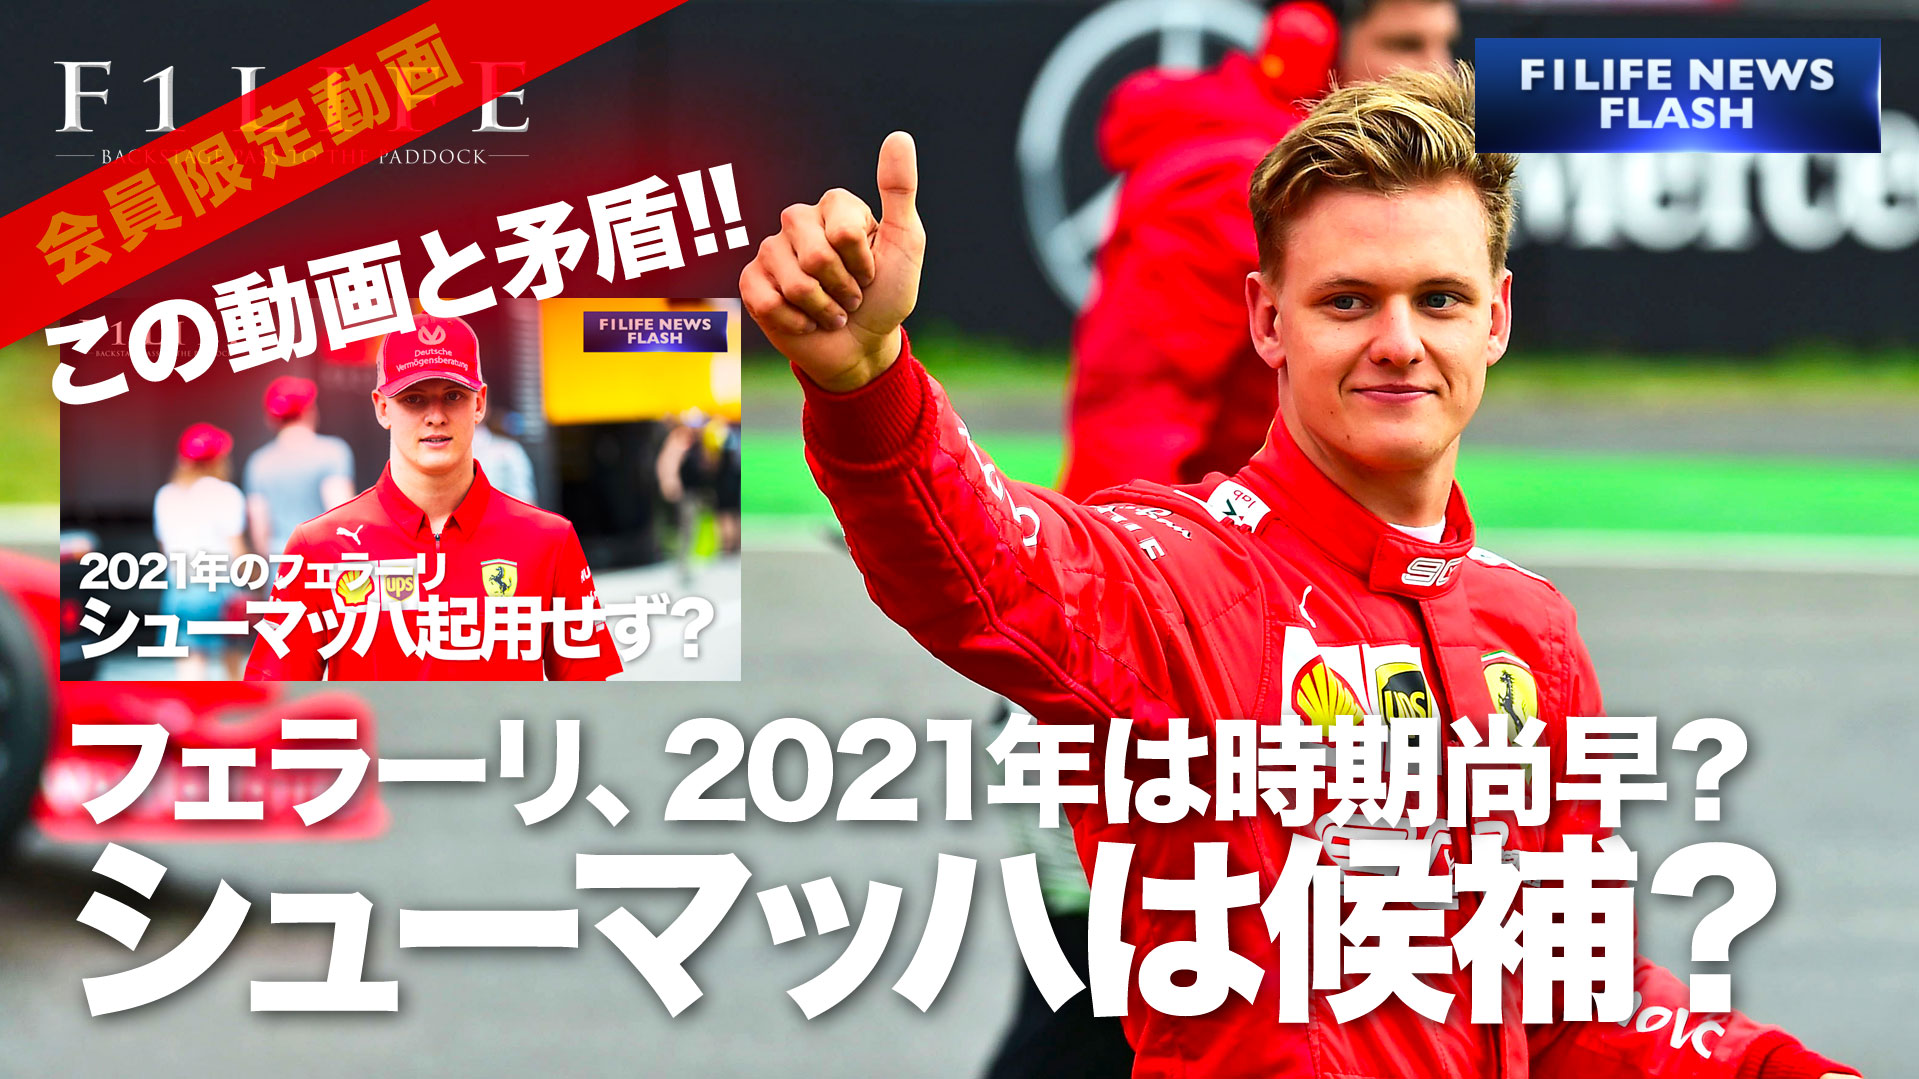 【F1LIFE CHANNEL】フェラーリ、ミック・シューマッハは2021年のシート候補？【矛盾？】